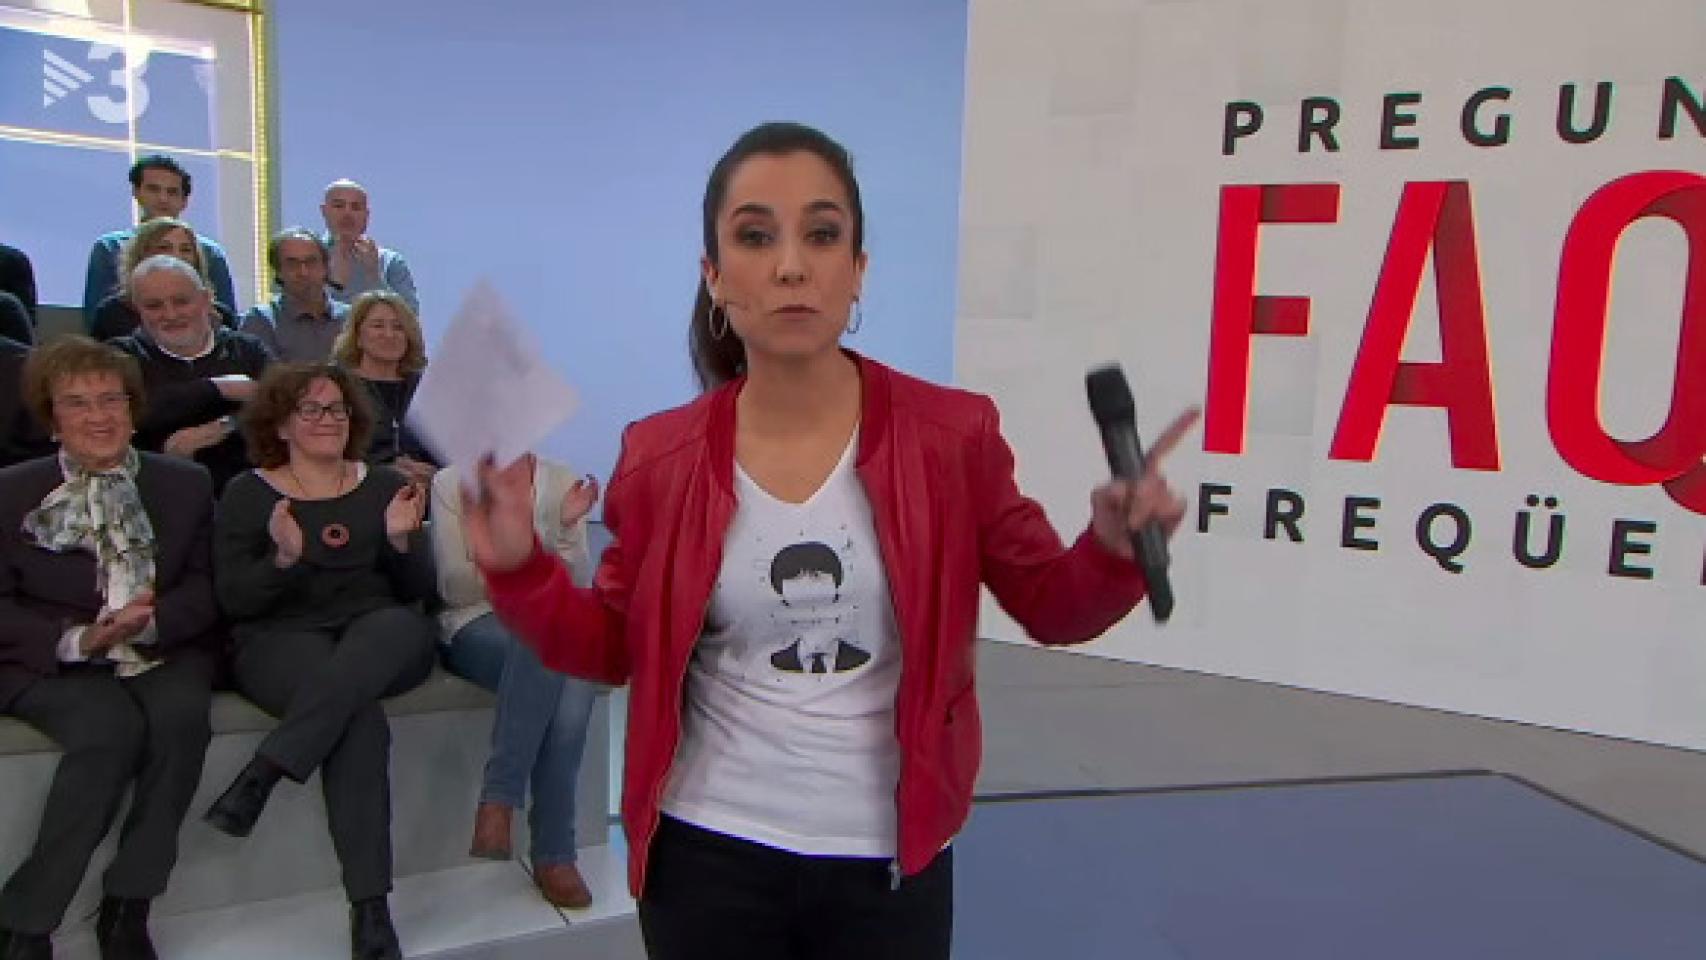 La presentadora del debate político de TV3 aparece con una camiseta de Puigdemont